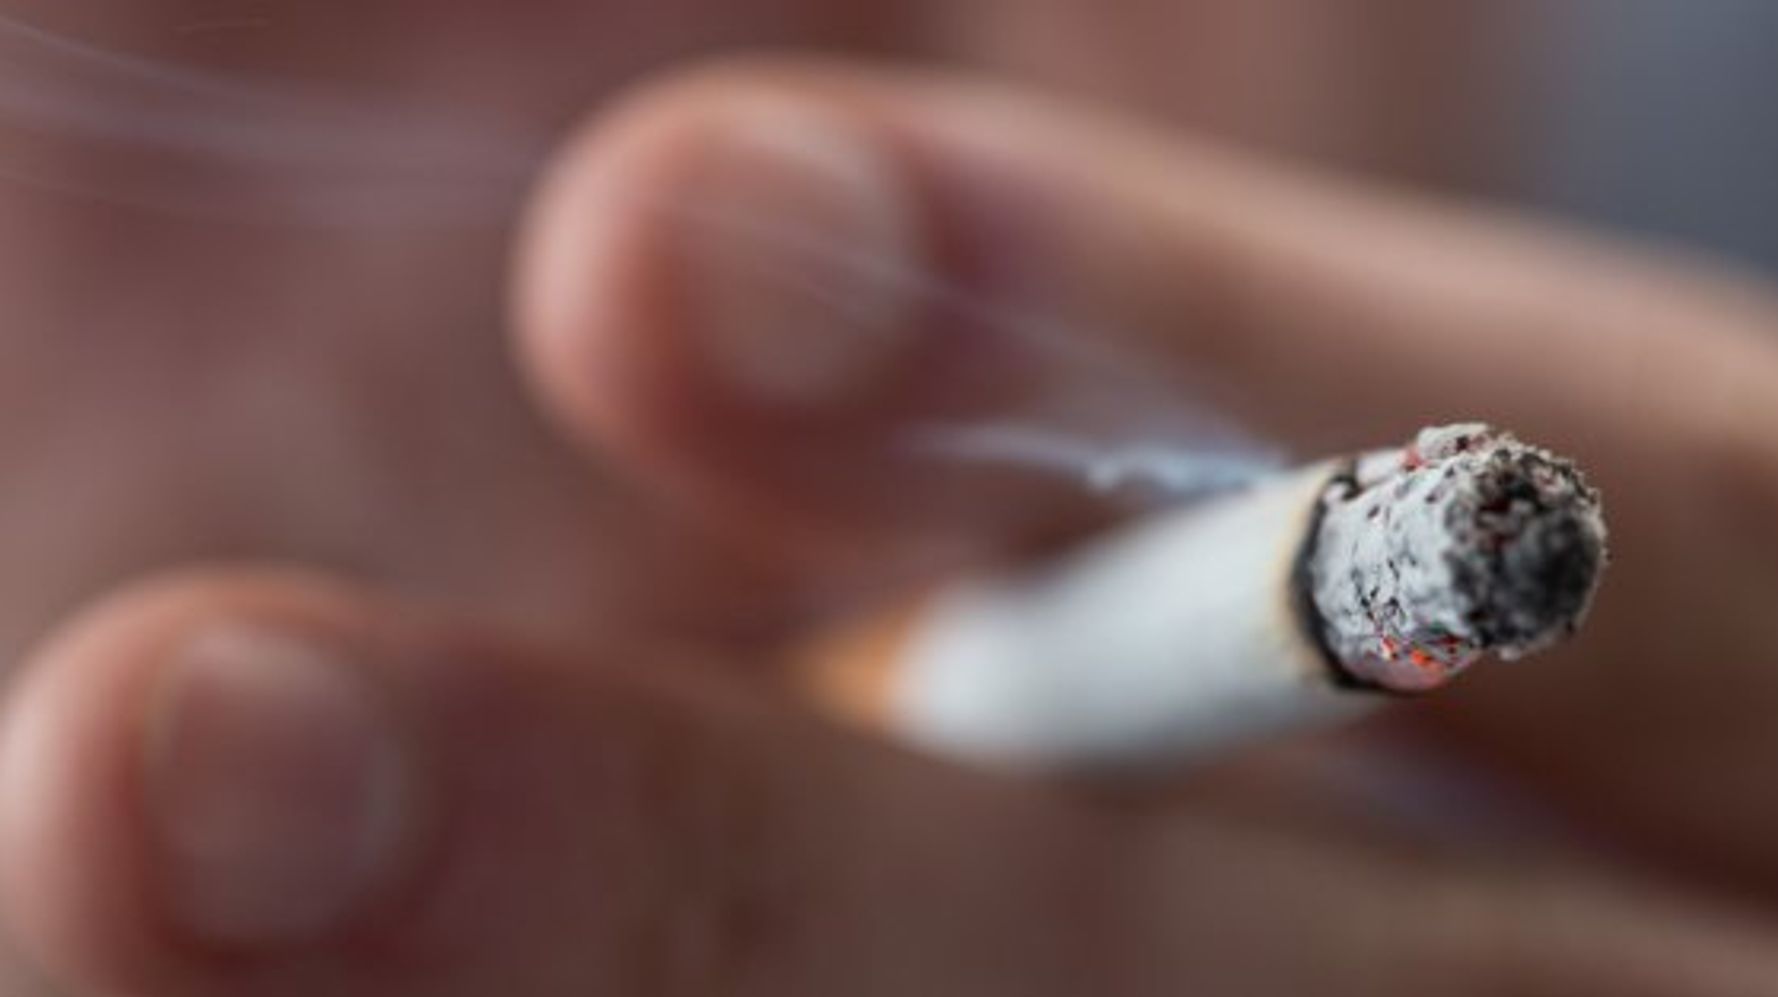 タバコを1本吸うごとに 11分寿命が縮まる 検証動画 ハフポスト News